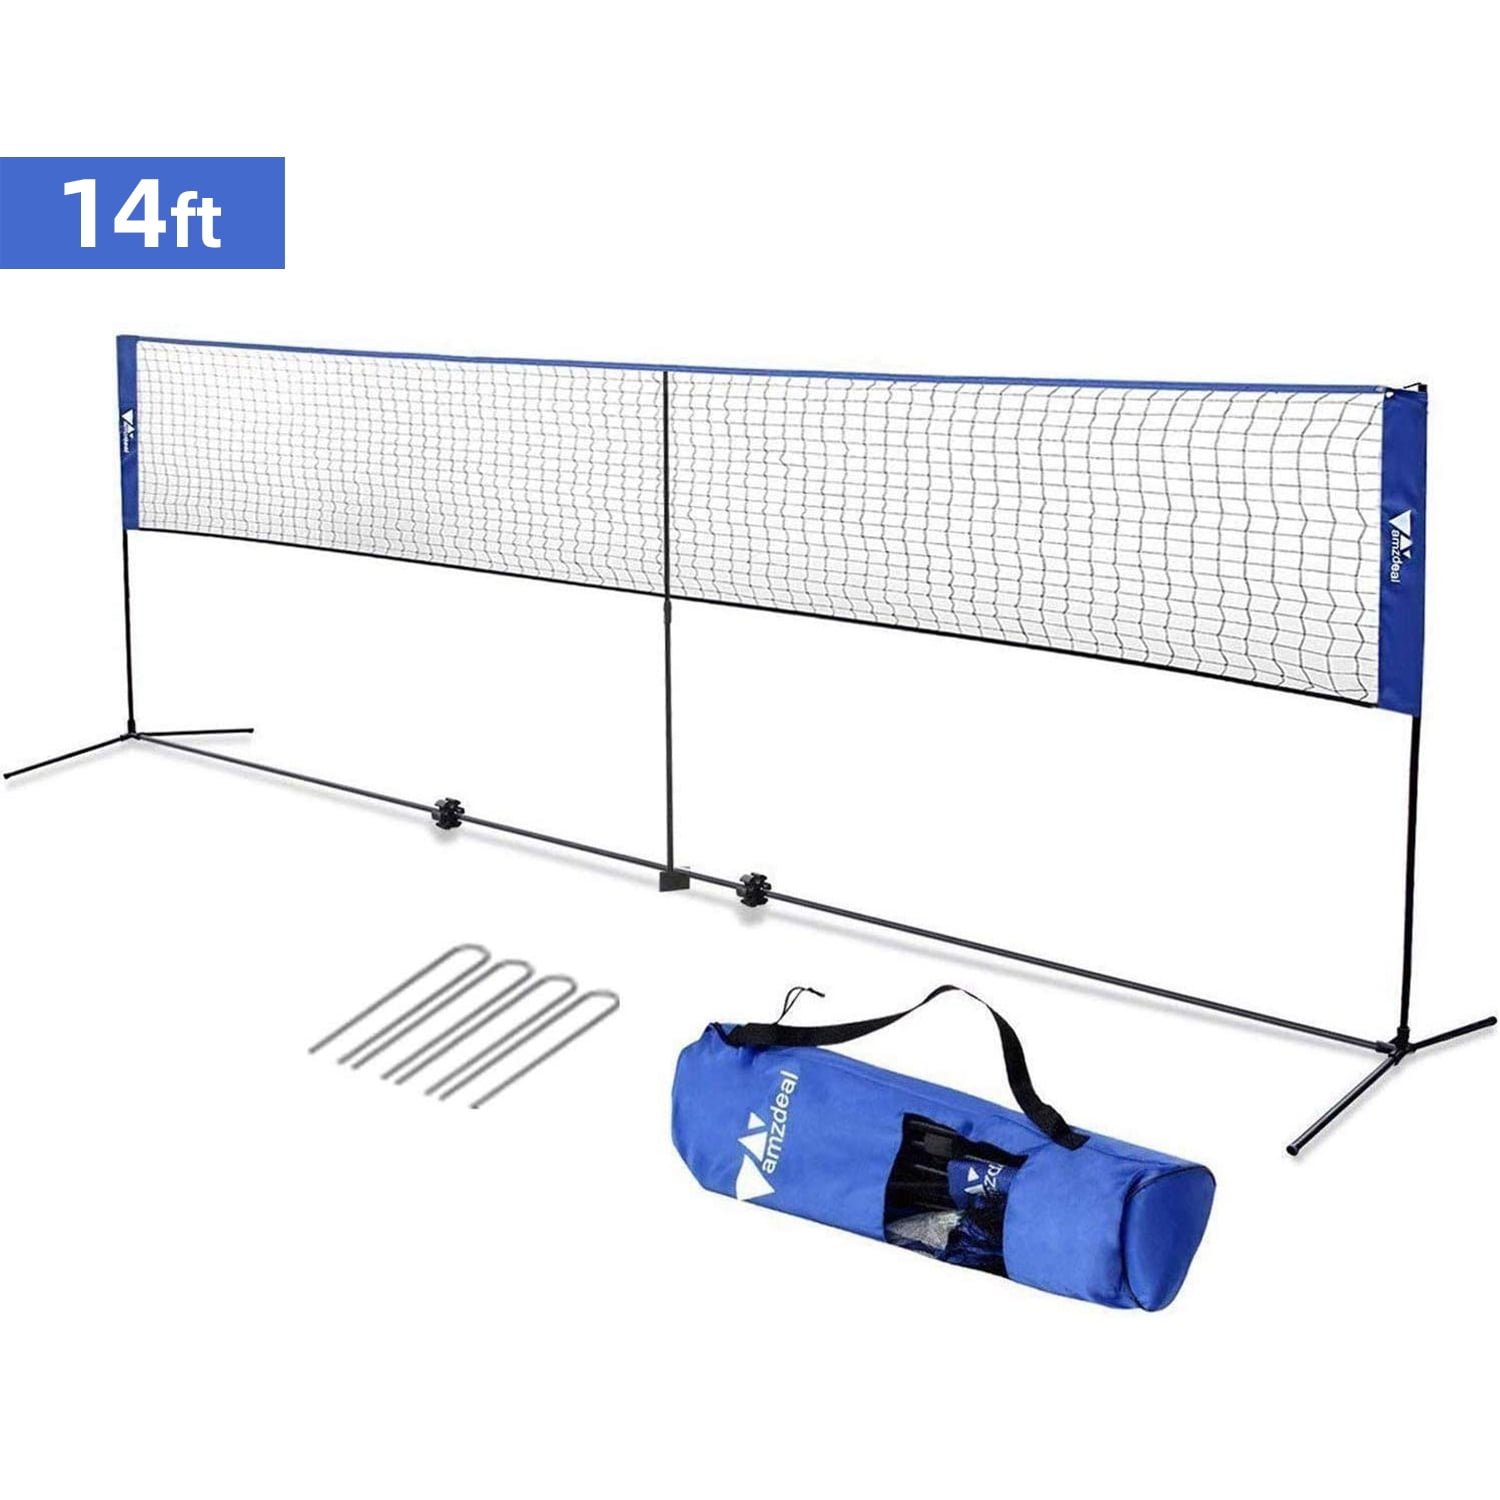 22605円 適切な価格 VIVOHOME Portable 17ft Height Adjustable Outdoor Badminton Net Set with Sta